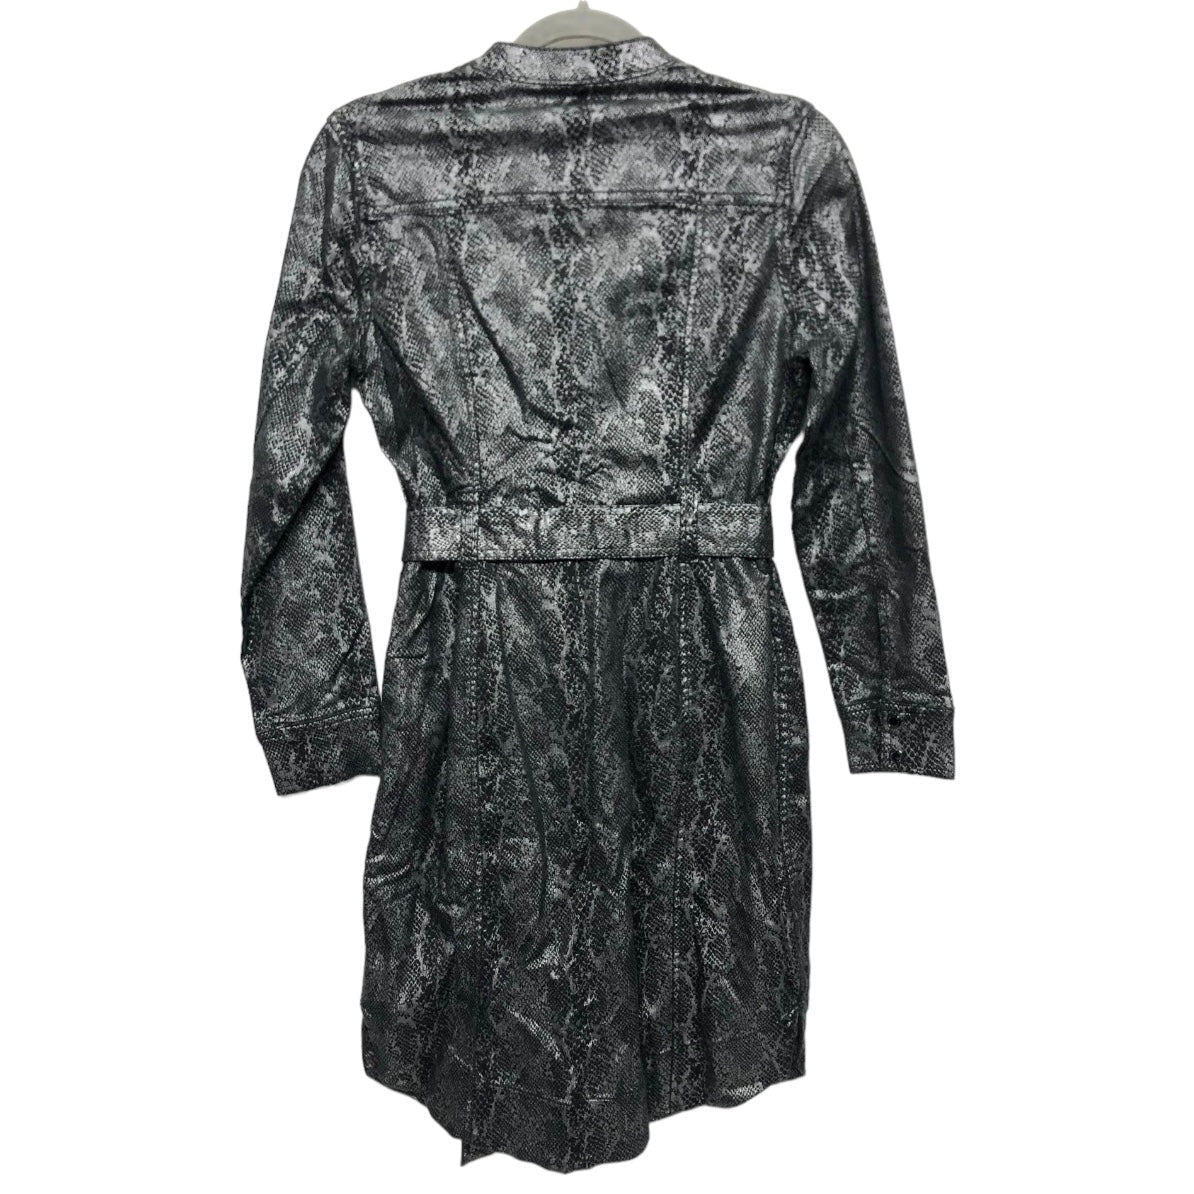 Black Dress Casual Short White House Black Market, Size 4petite